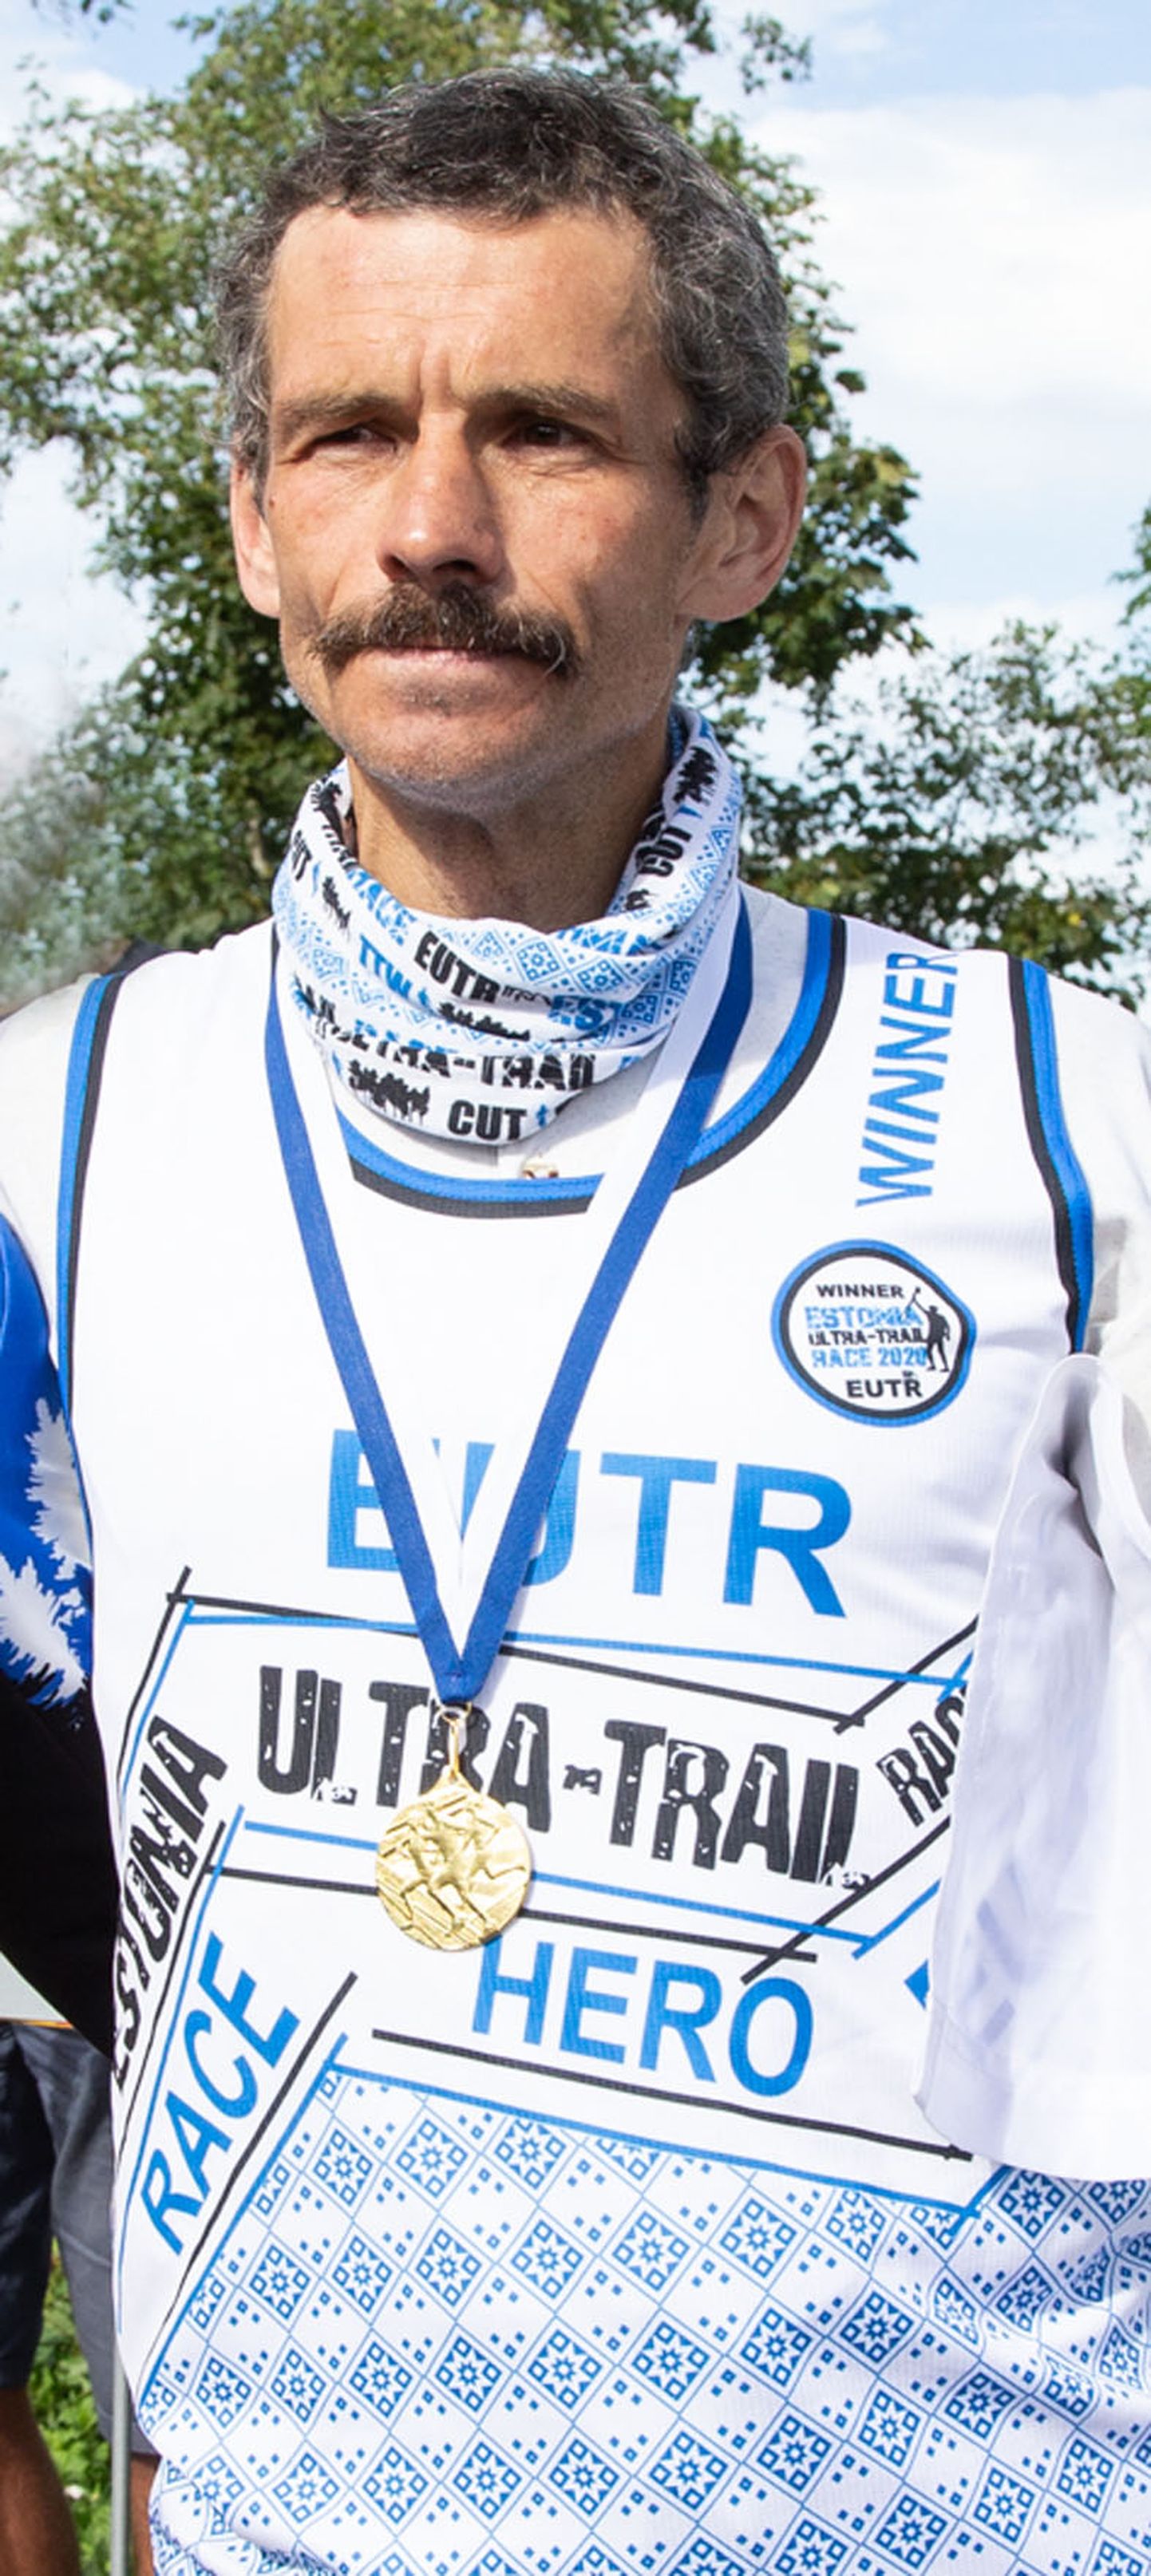 Vladmir Frolovile kuuluvad nüüd Eesti rekordid nii 24 kui ka 12 tunni jooksus ja mõlemad on püstitatud Sillamäel.